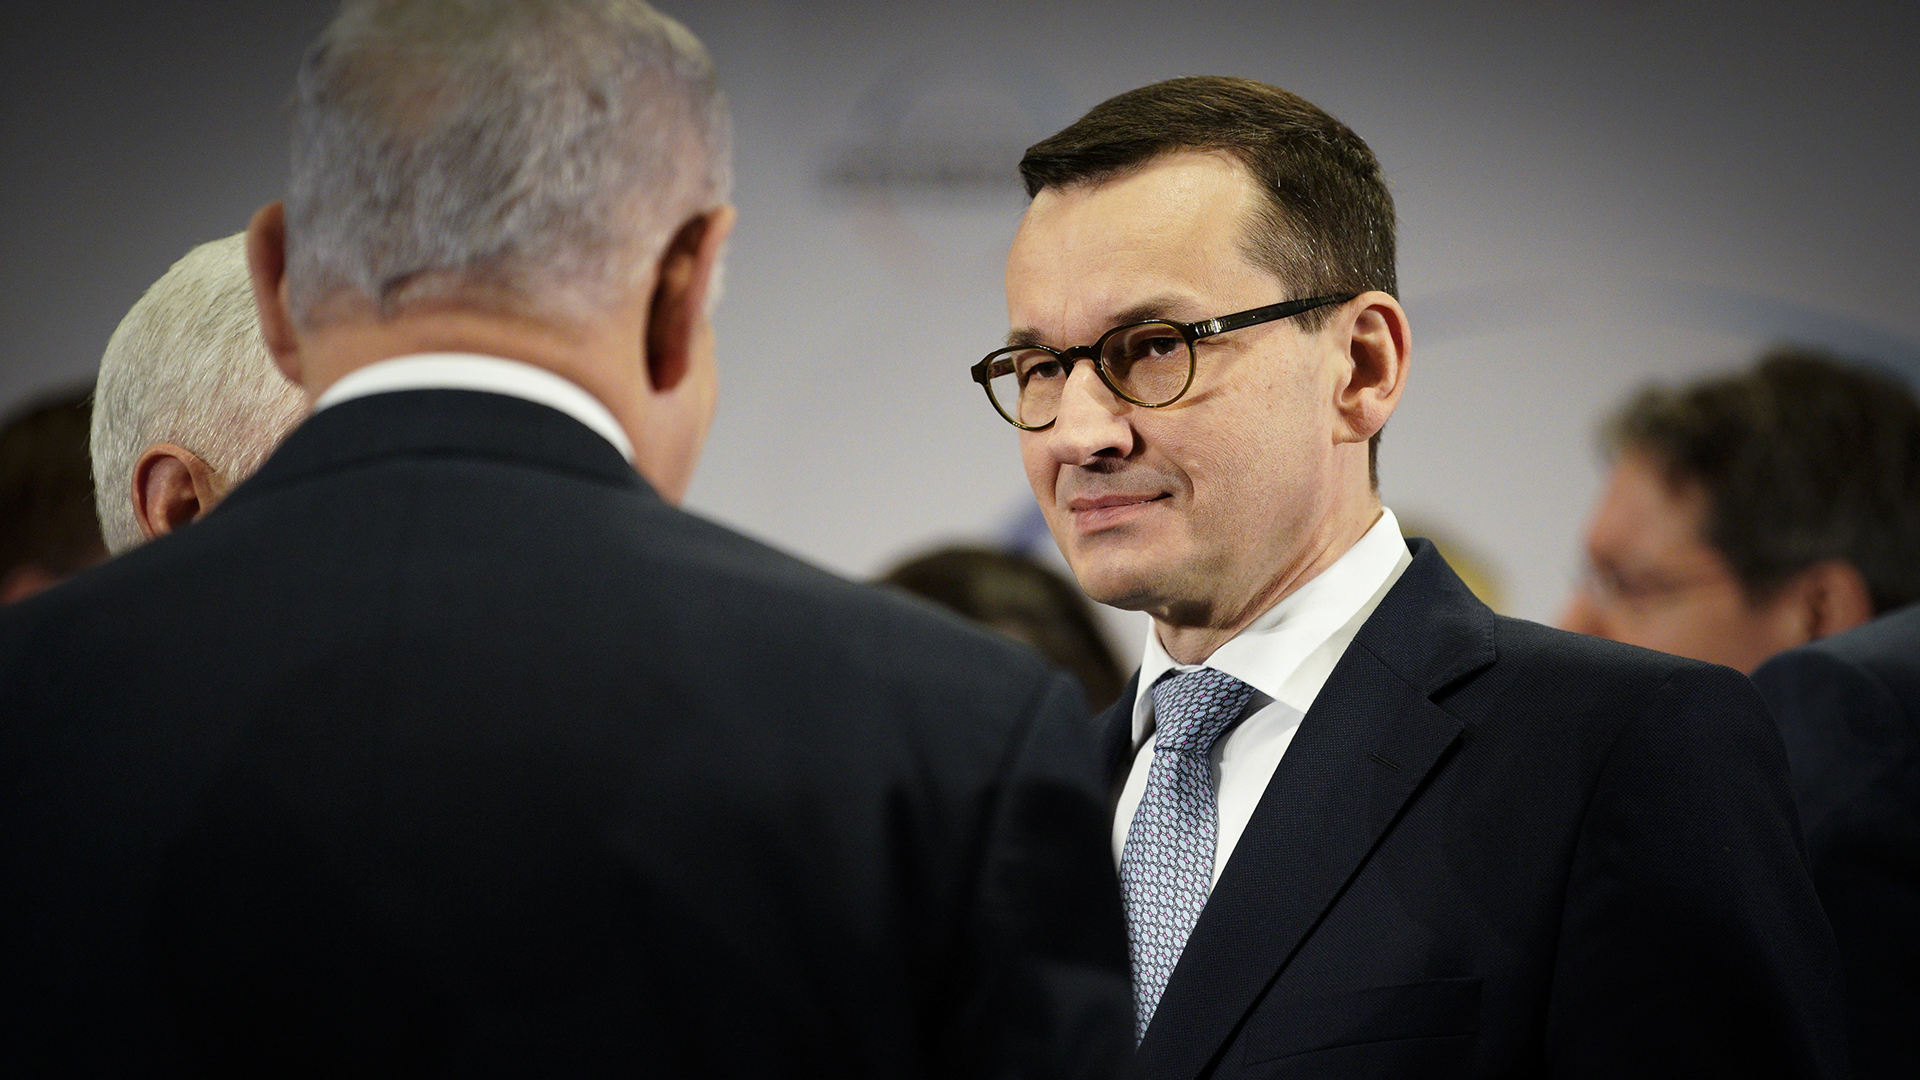 Die Premierminister von Polen und Israel, Morawiecki und Netanyahu | picture alliance / NurPhoto